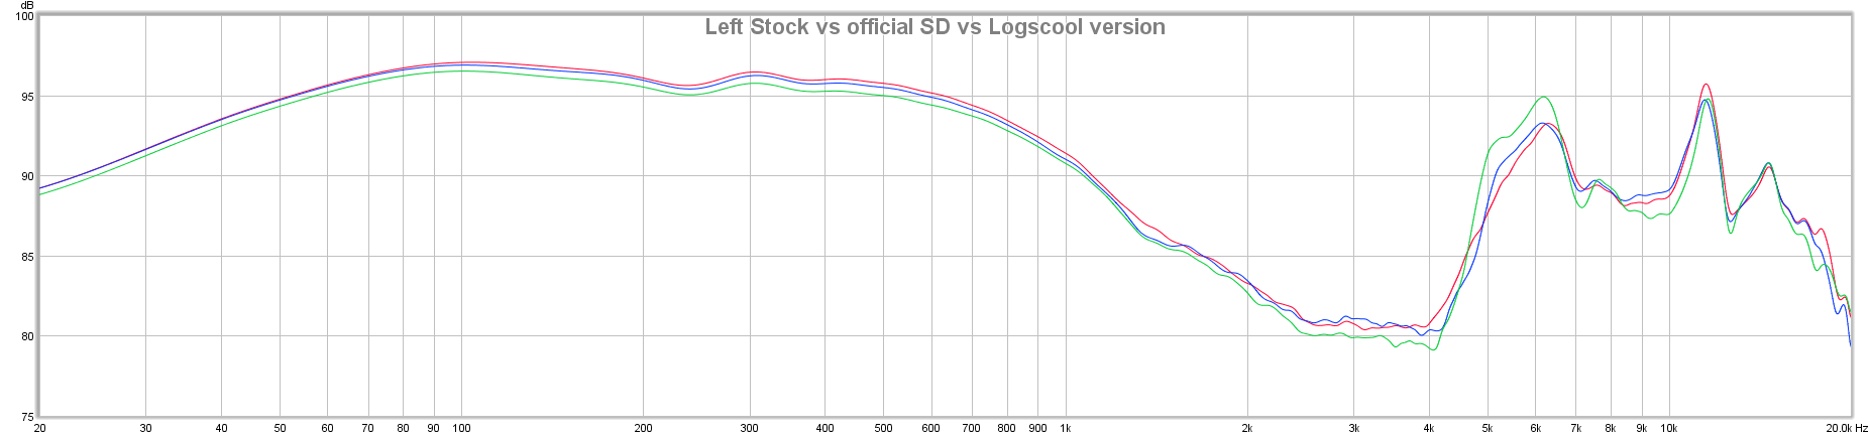 Left stock vs official SD vs Logscool Version.jpg